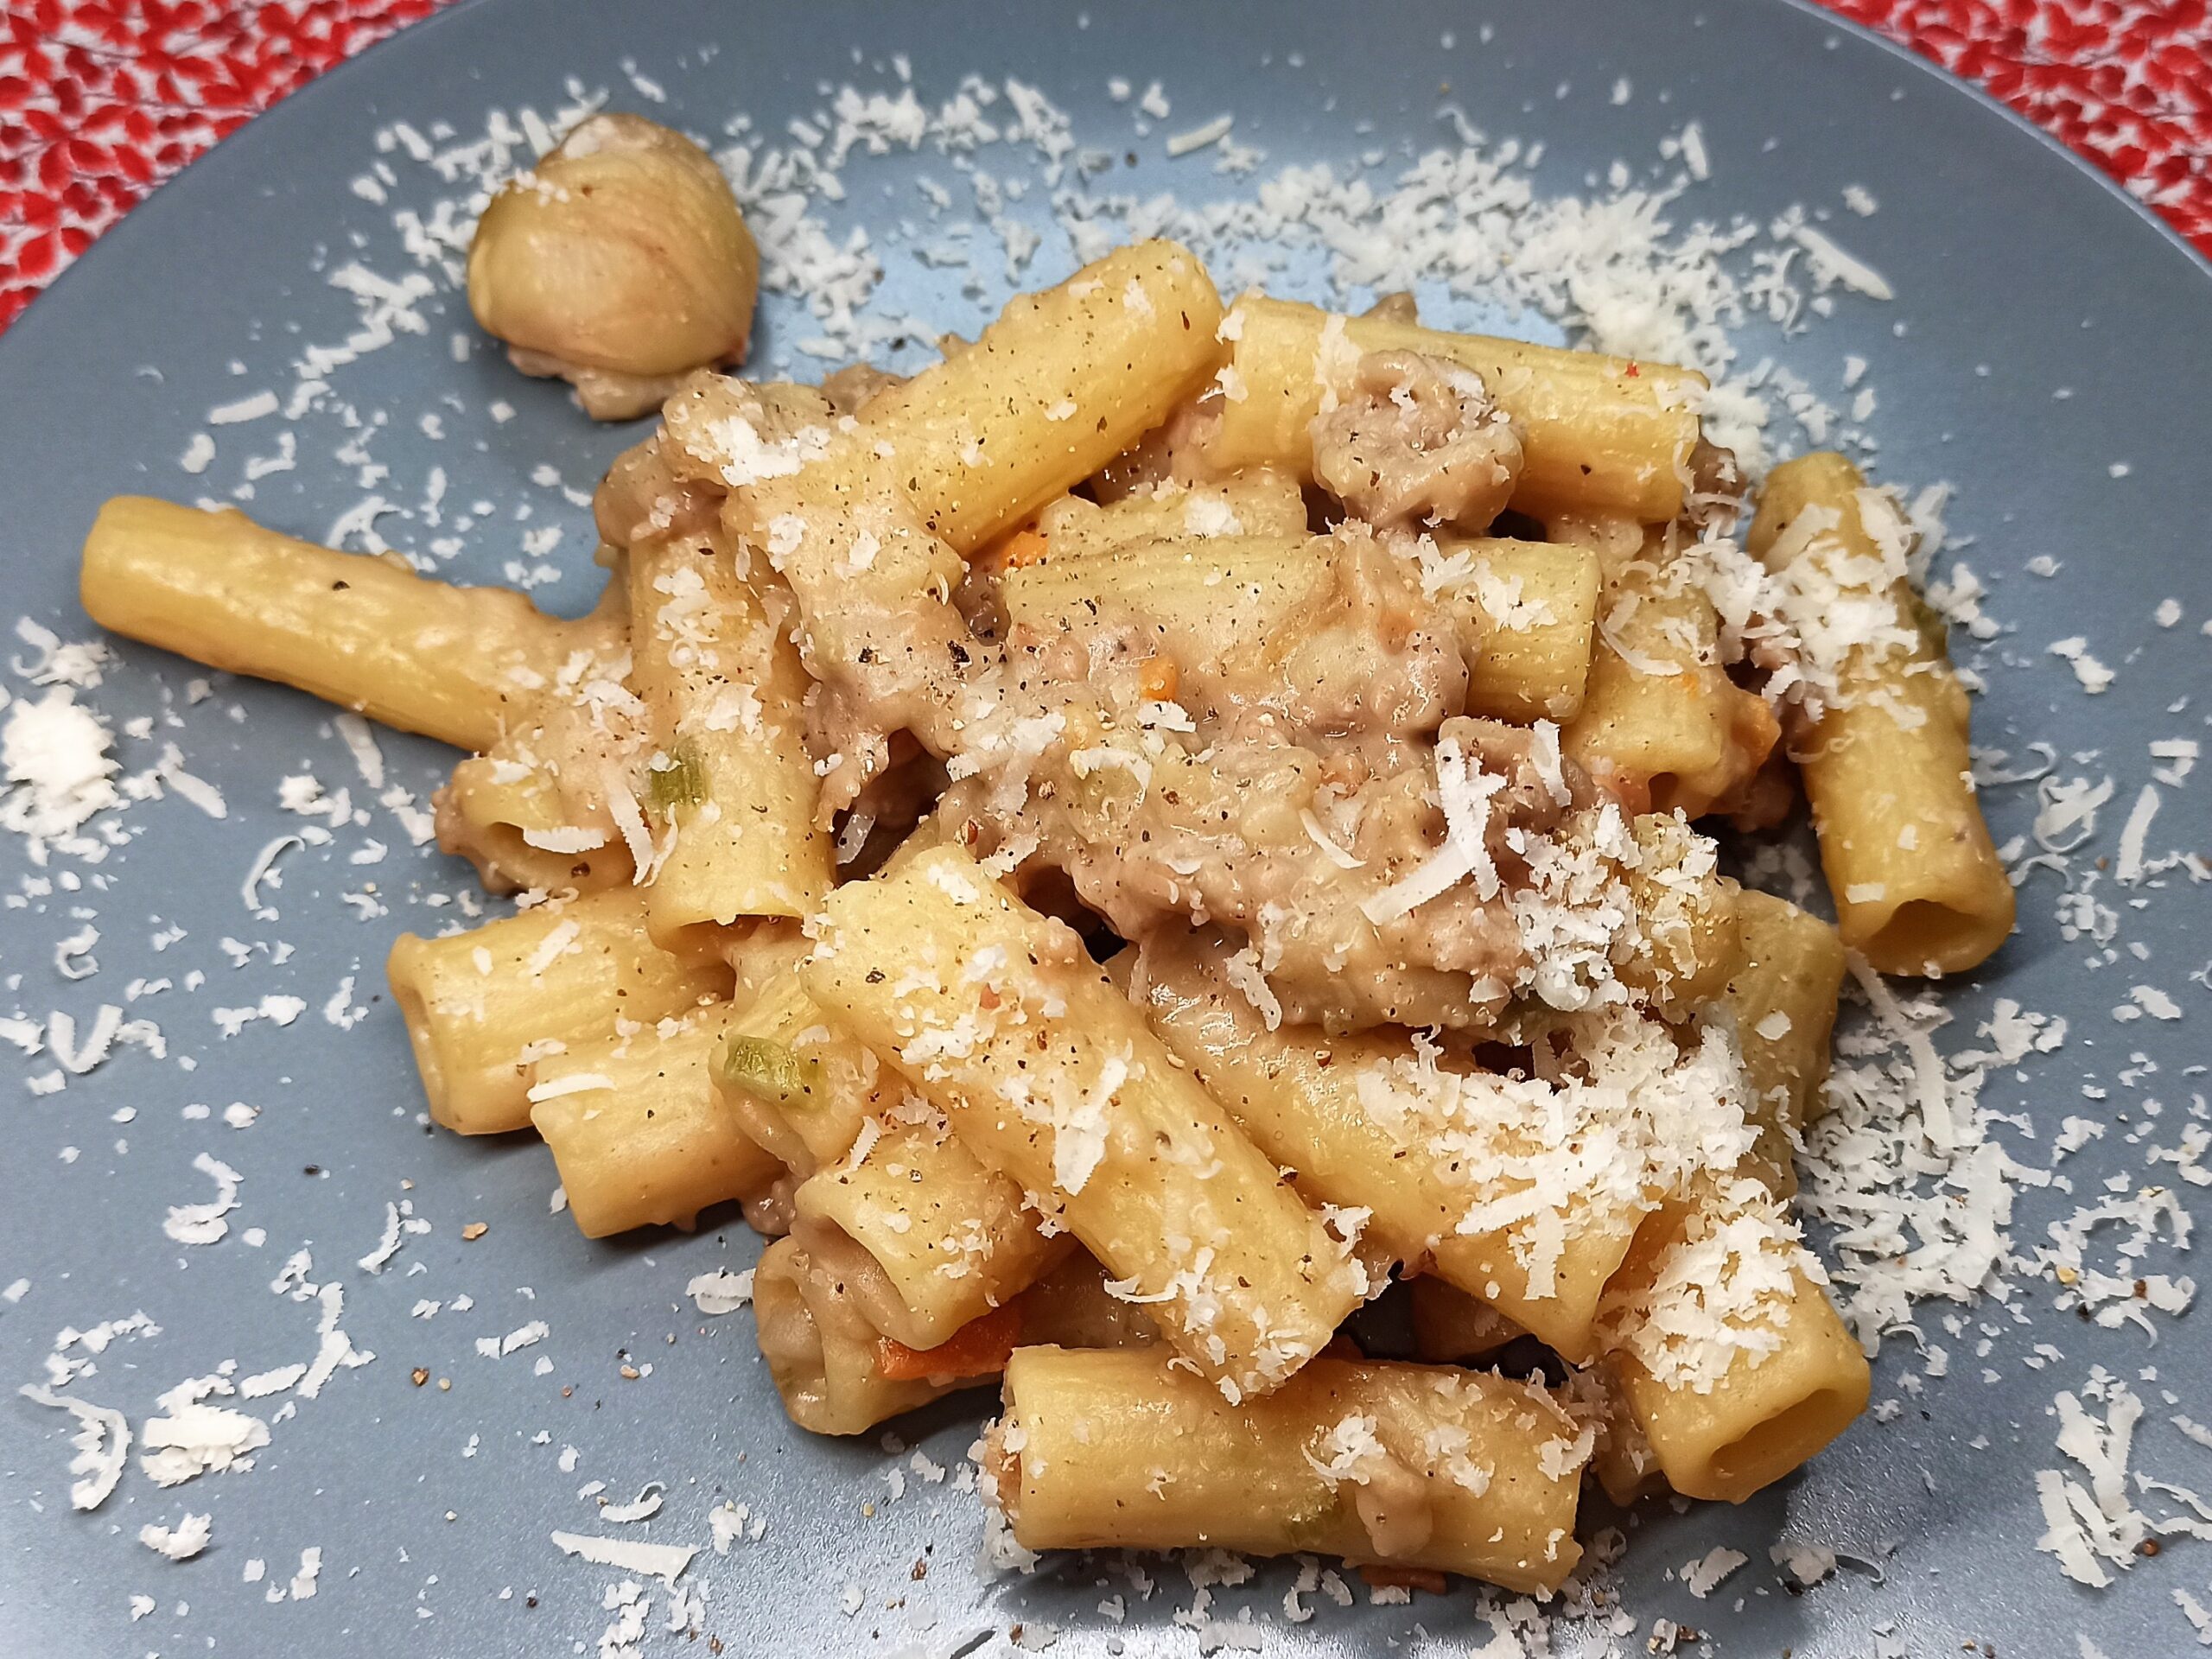 pasta-alless-alless,-la-ricetta-napoletana-con-il-sugo-di-salsicce-e-castagne.-facilissima-si-prepara-in-pochi-minuti